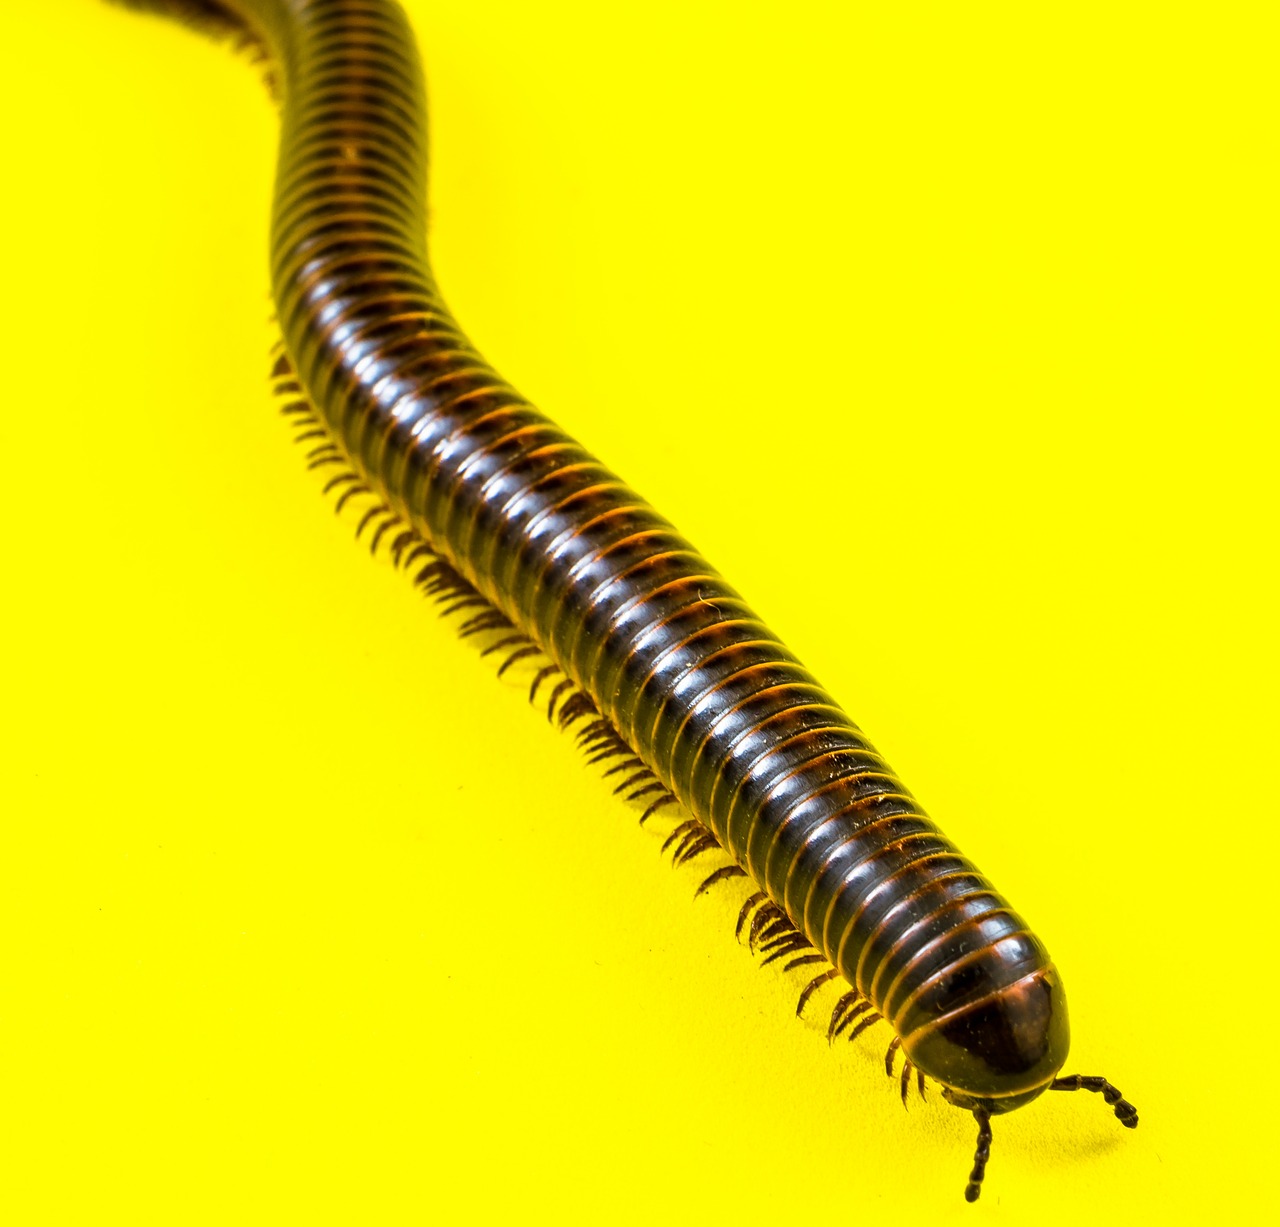 giant tausendfüßer millipedes arthropod free photo